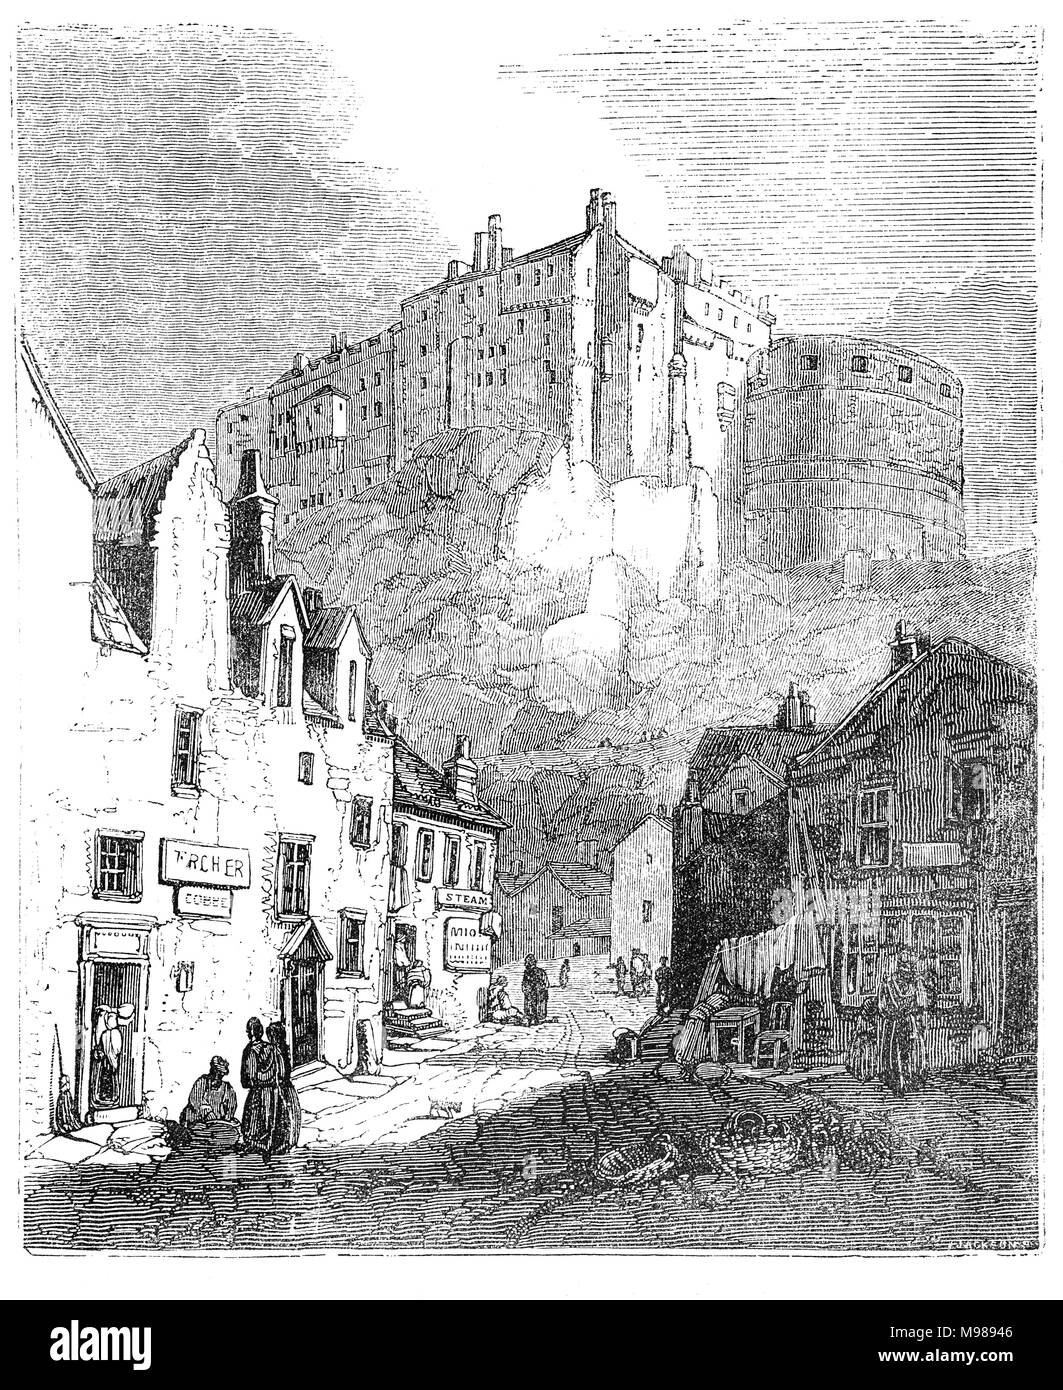 Vu de l'Herbe Marché, Château d'Edimbourg sur le rocher du château est une forteresse historique qui domine les toits de la ville d'Édimbourg, en Écosse. Il y a eu un château royal depuis le règne de David I au 12ème siècle, et le site a continué d'être une résidence royale jusqu'en 1633. À partir de la 15e siècle le château a diminué, et le rôle d'habitation par le 17ème siècle, il a été principalement utilisé comme caserne militaire avec une importante garnison. Banque D'Images